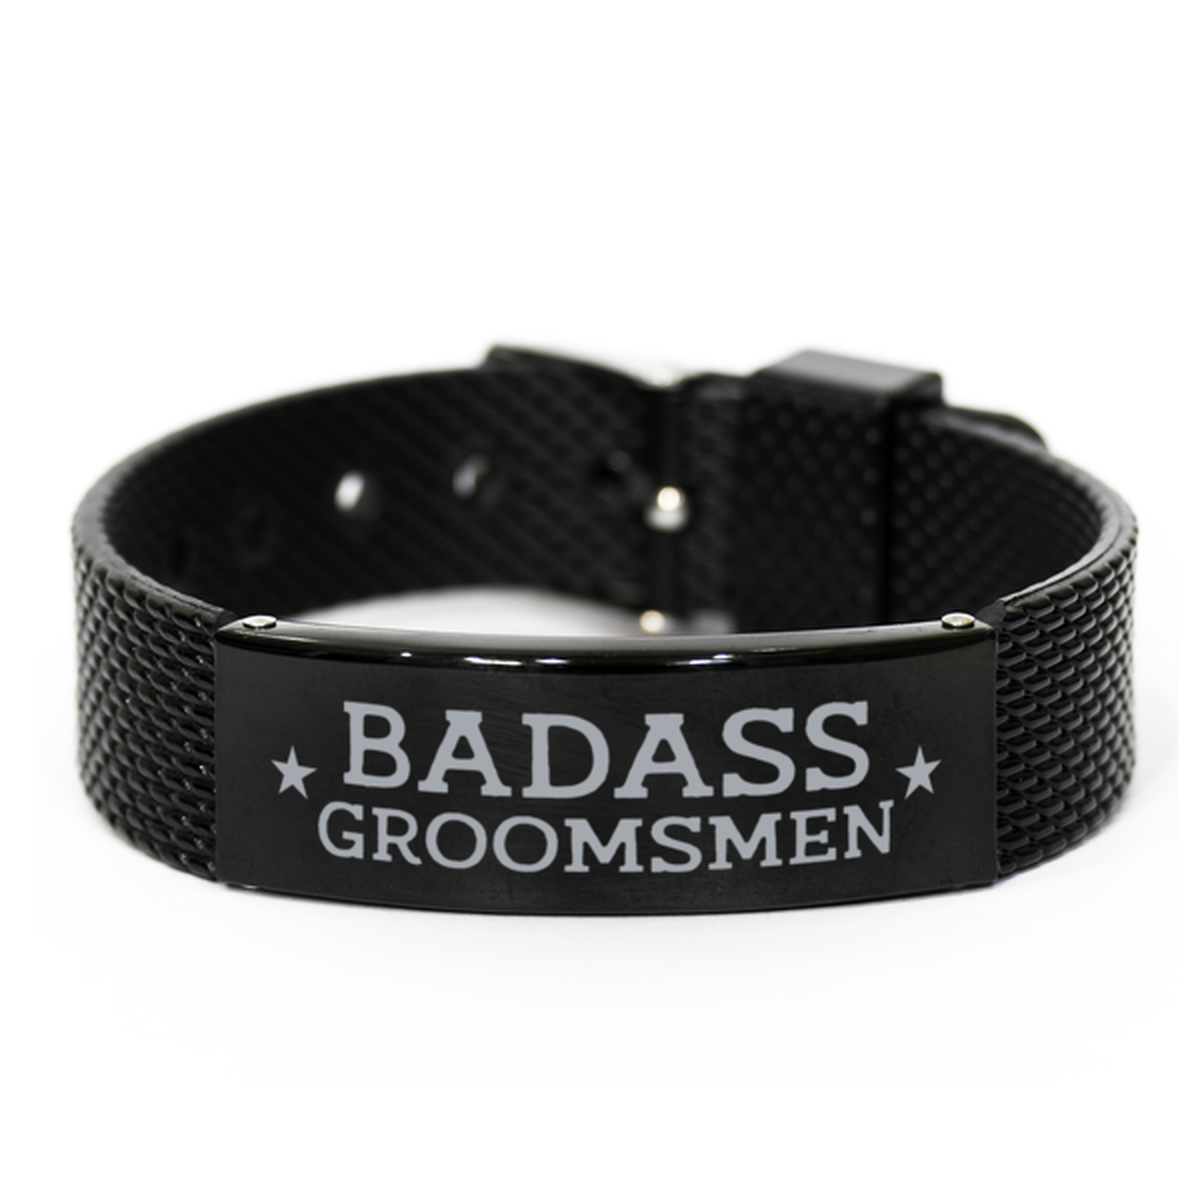 Groomsmen Black Shark Mesh Bracelet, Badass Groomsmen, Funny Family Gifts For Groomsmen From Groom